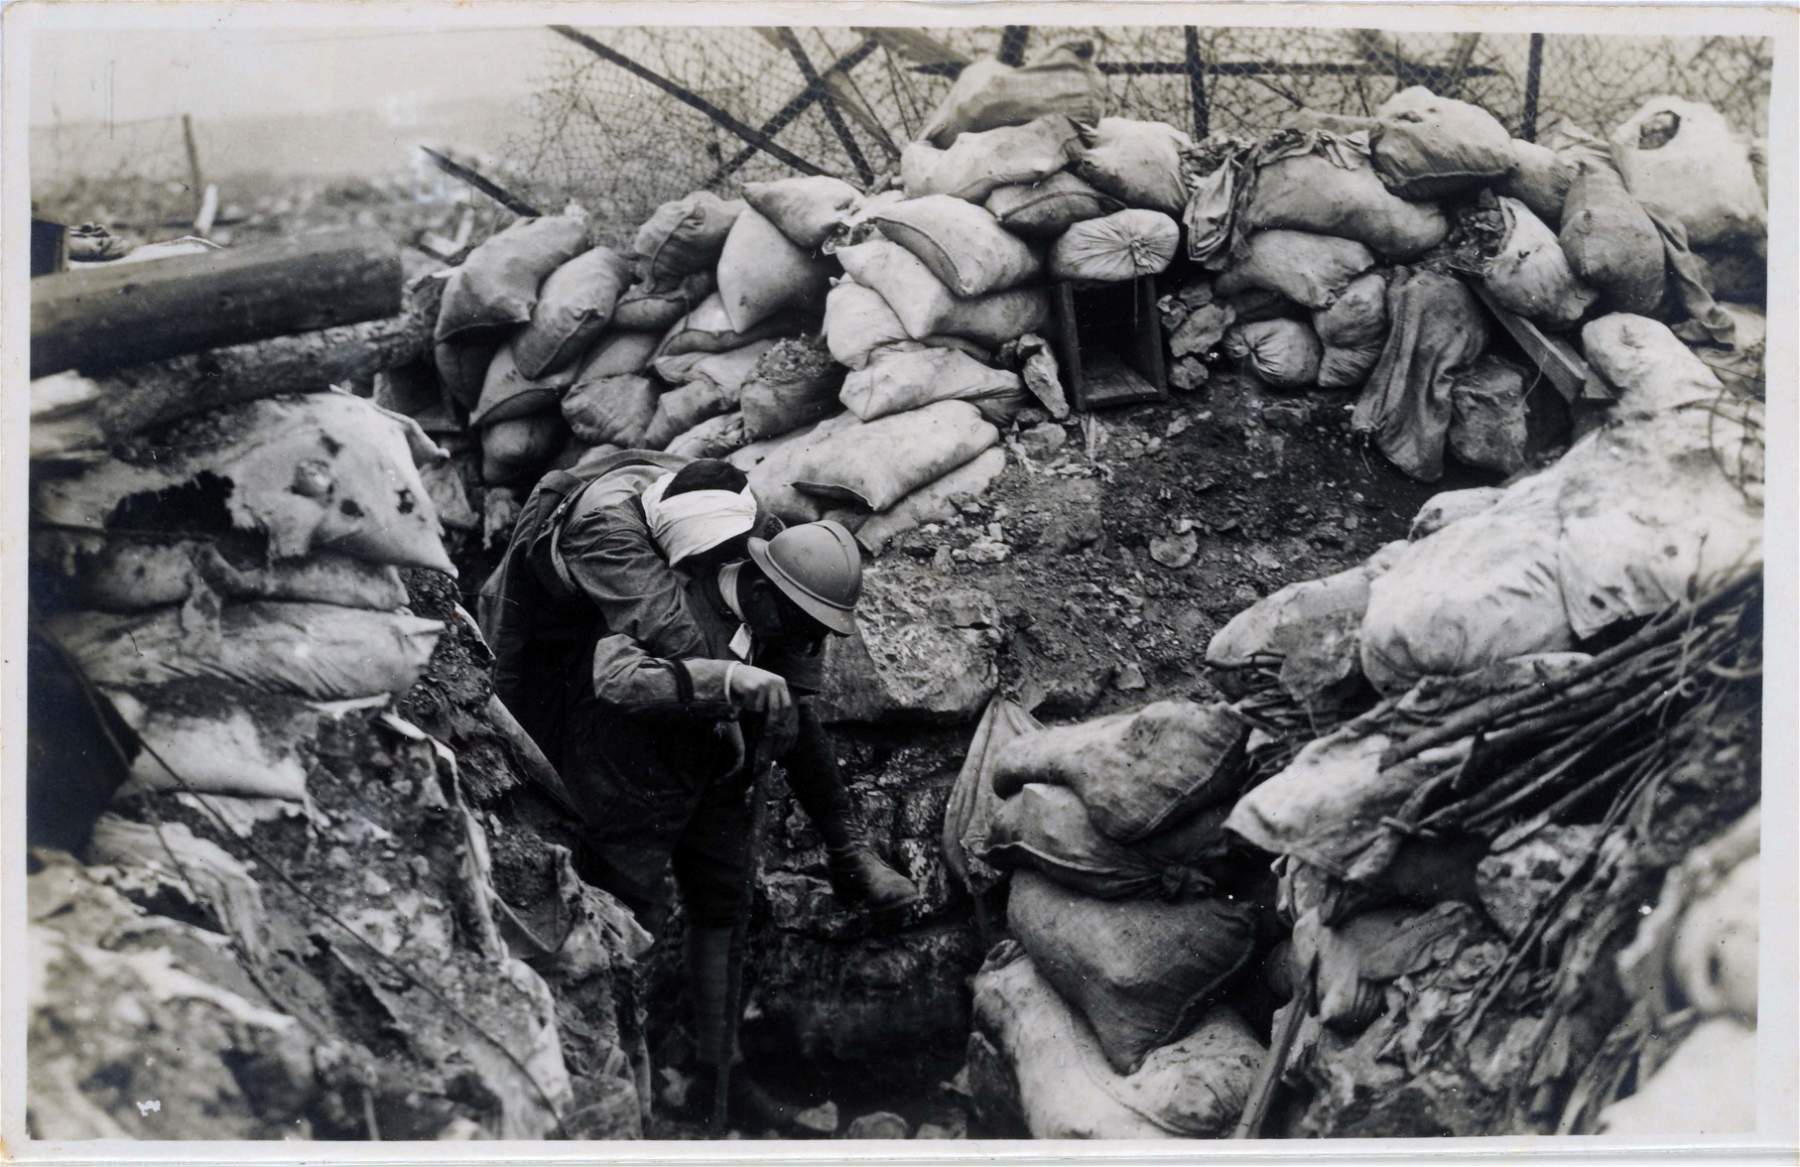 Les drames et l'intimité des soldats de la Première Guerre mondiale exposés à Sassari